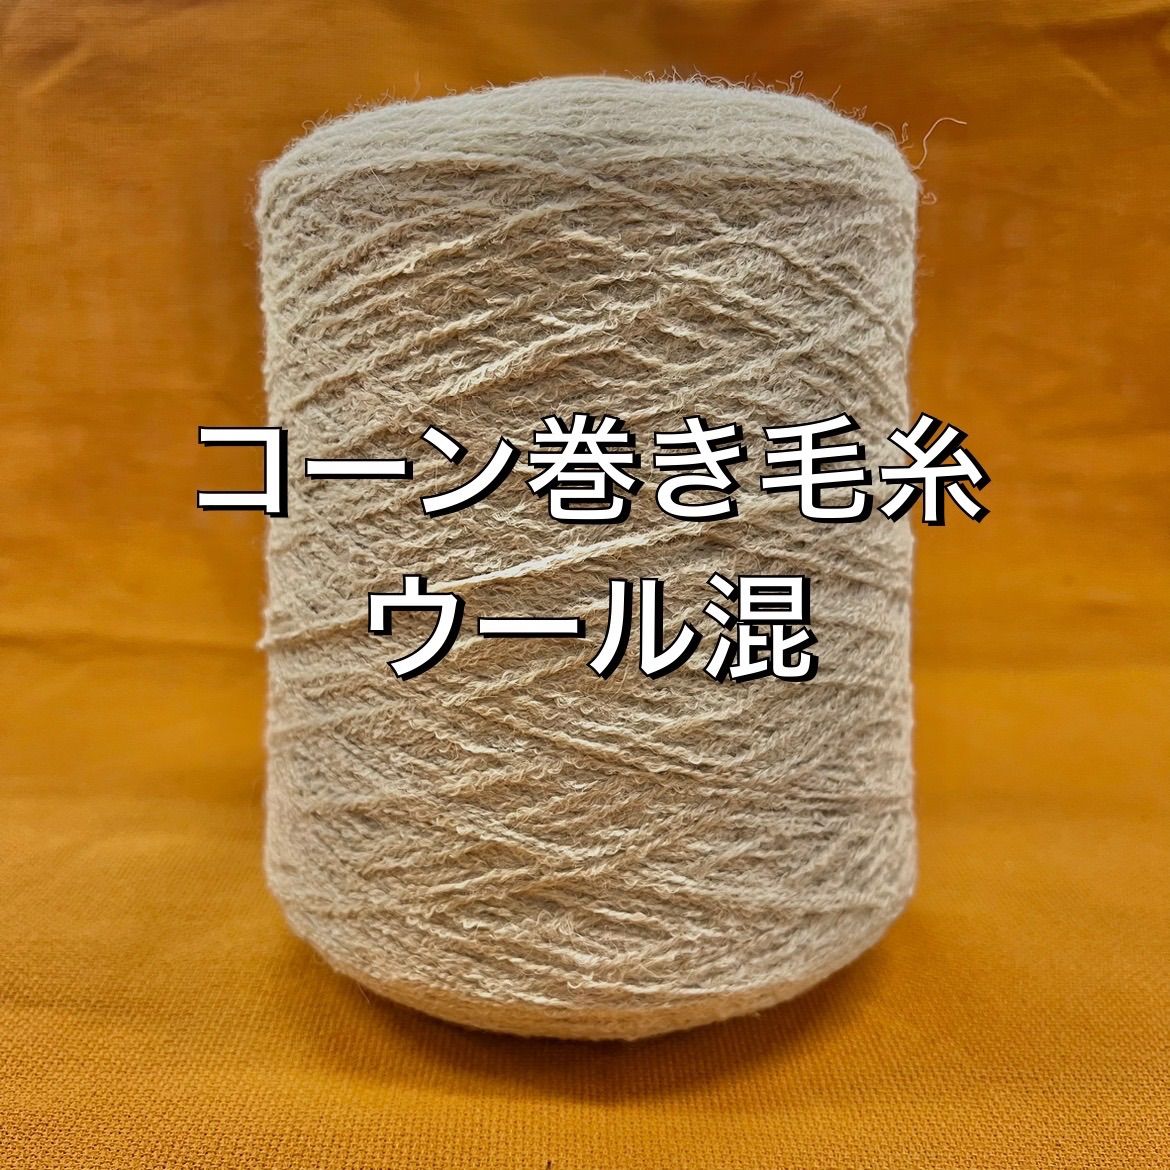 カシミア毛糸 コーン巻き 518g - 生地/糸